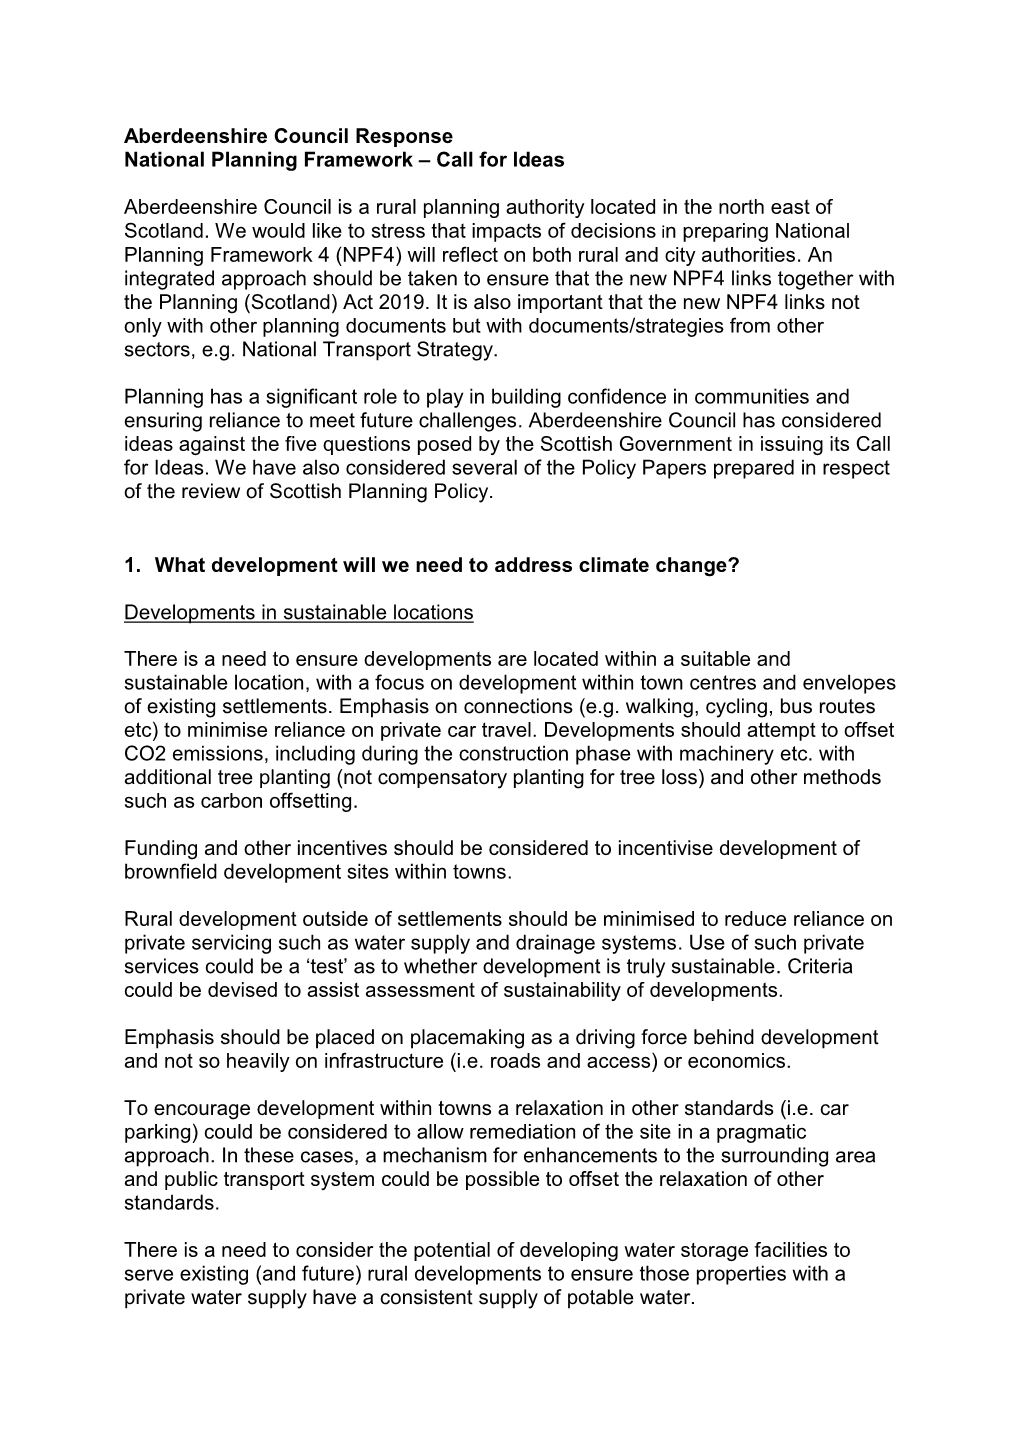 Aberdeenshire Council Response National Planning Framework – Call for Ideas